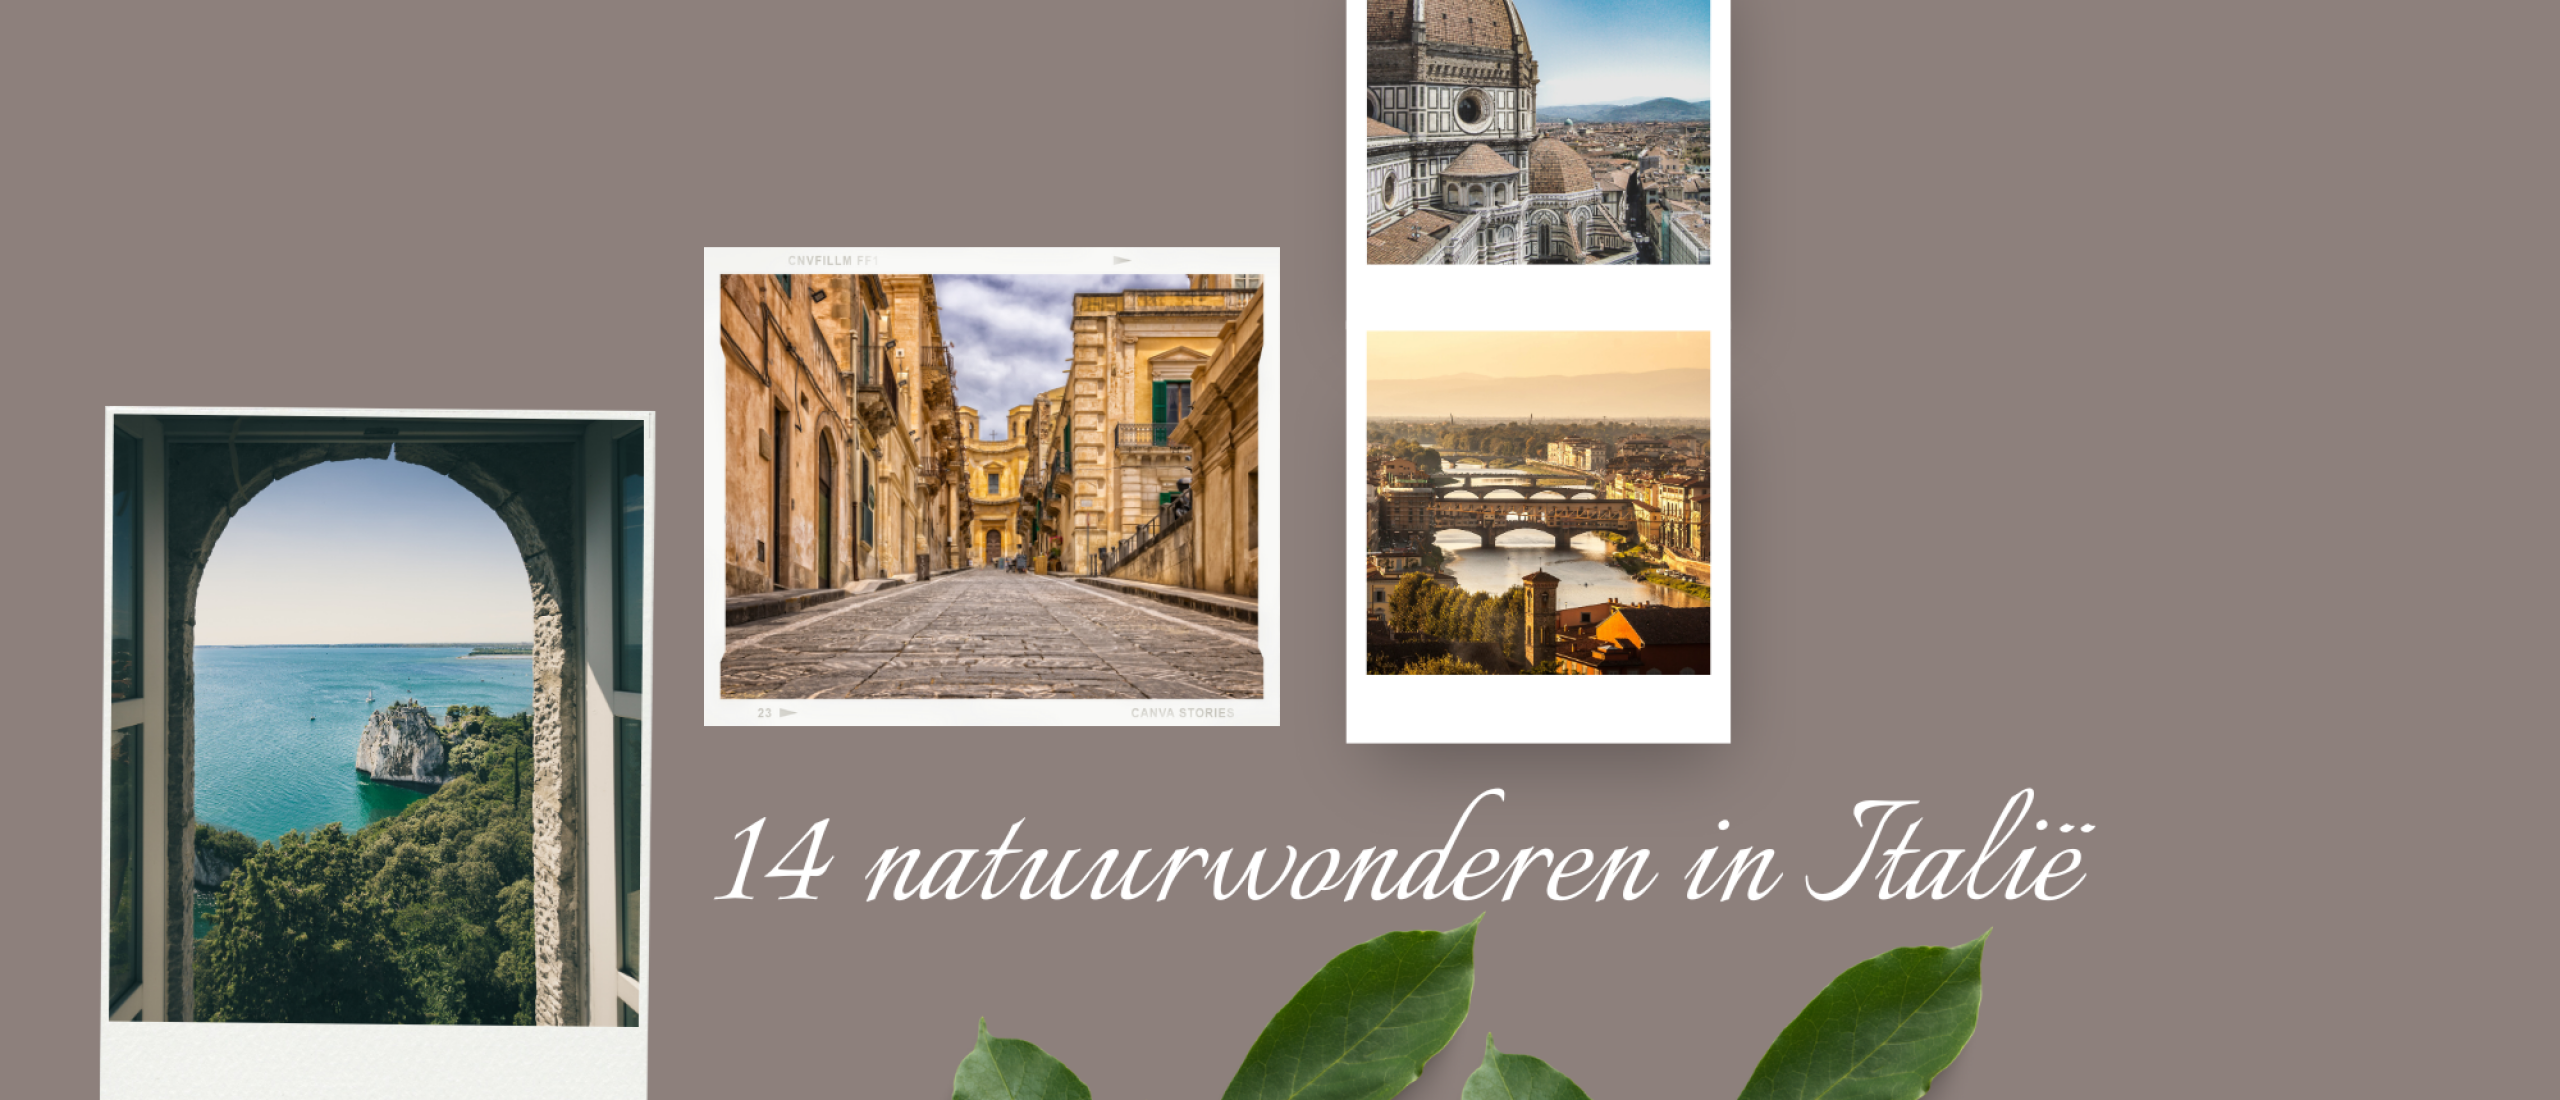 Deze natuurwonderen in Italië al gezien? Top 14 die je niet wil missen!